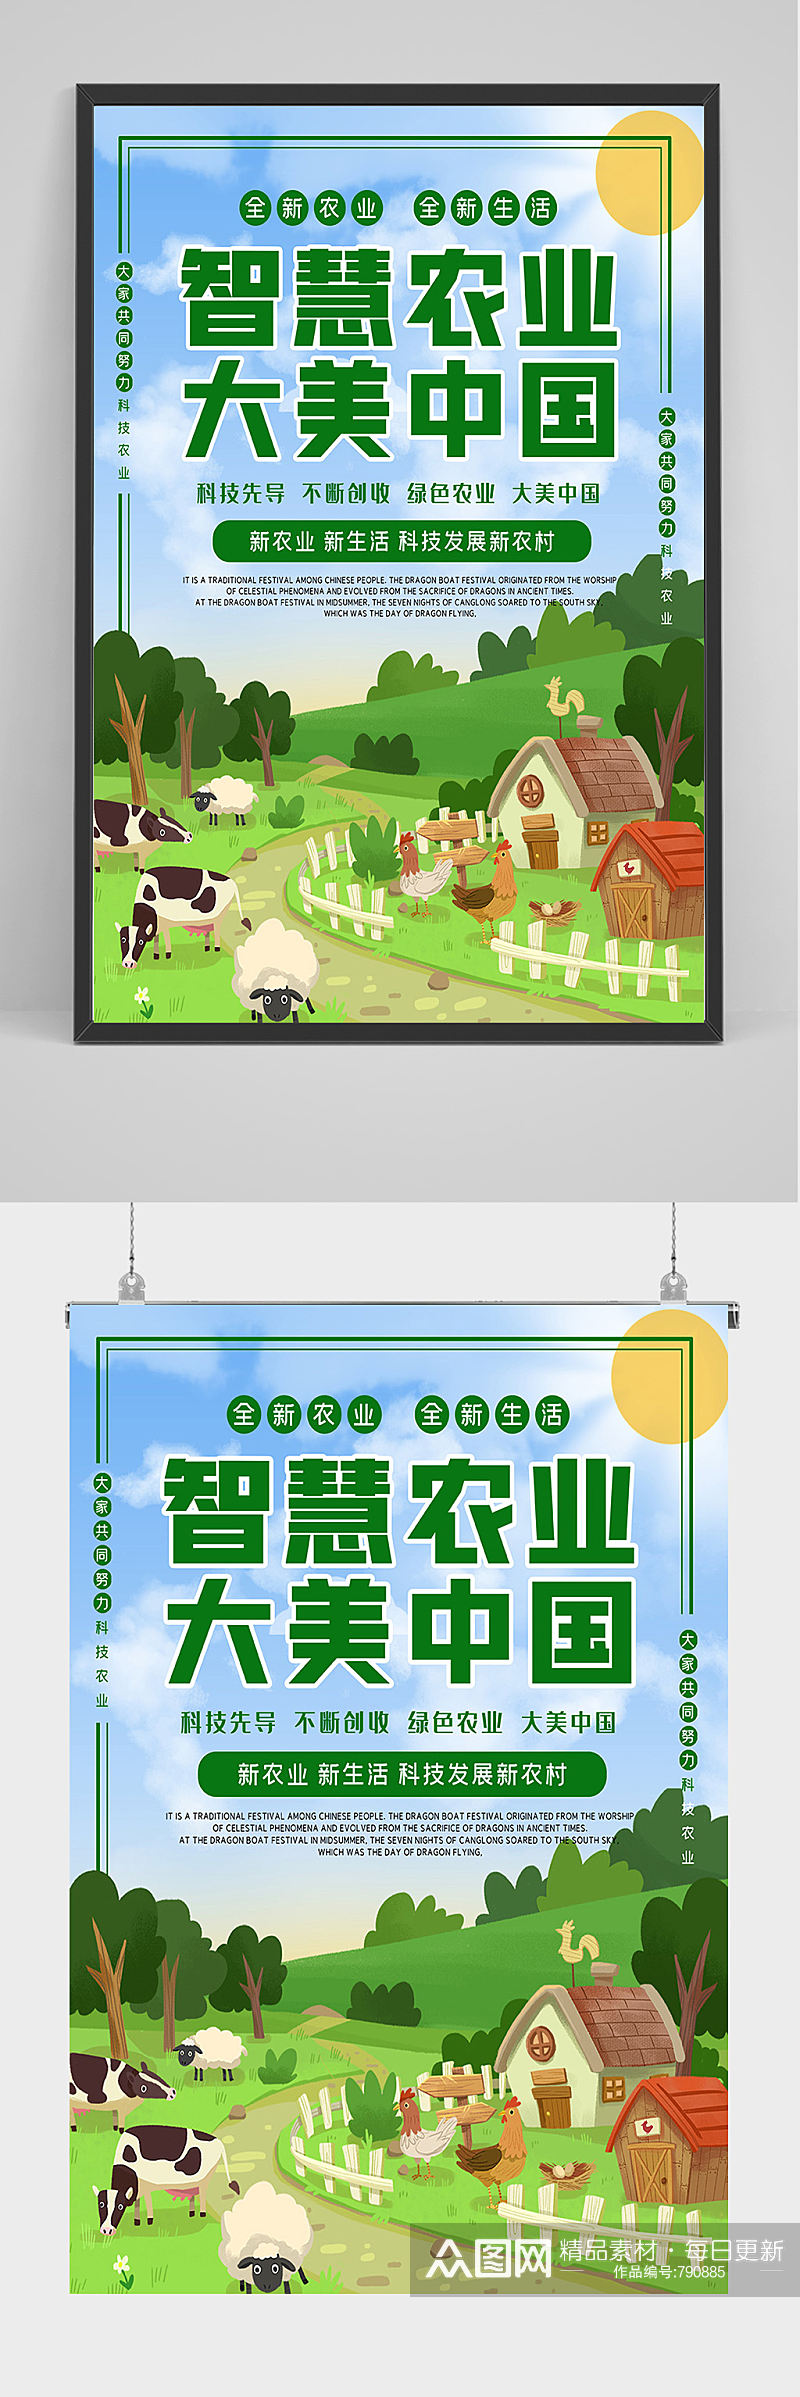 智慧农业海报设计素材